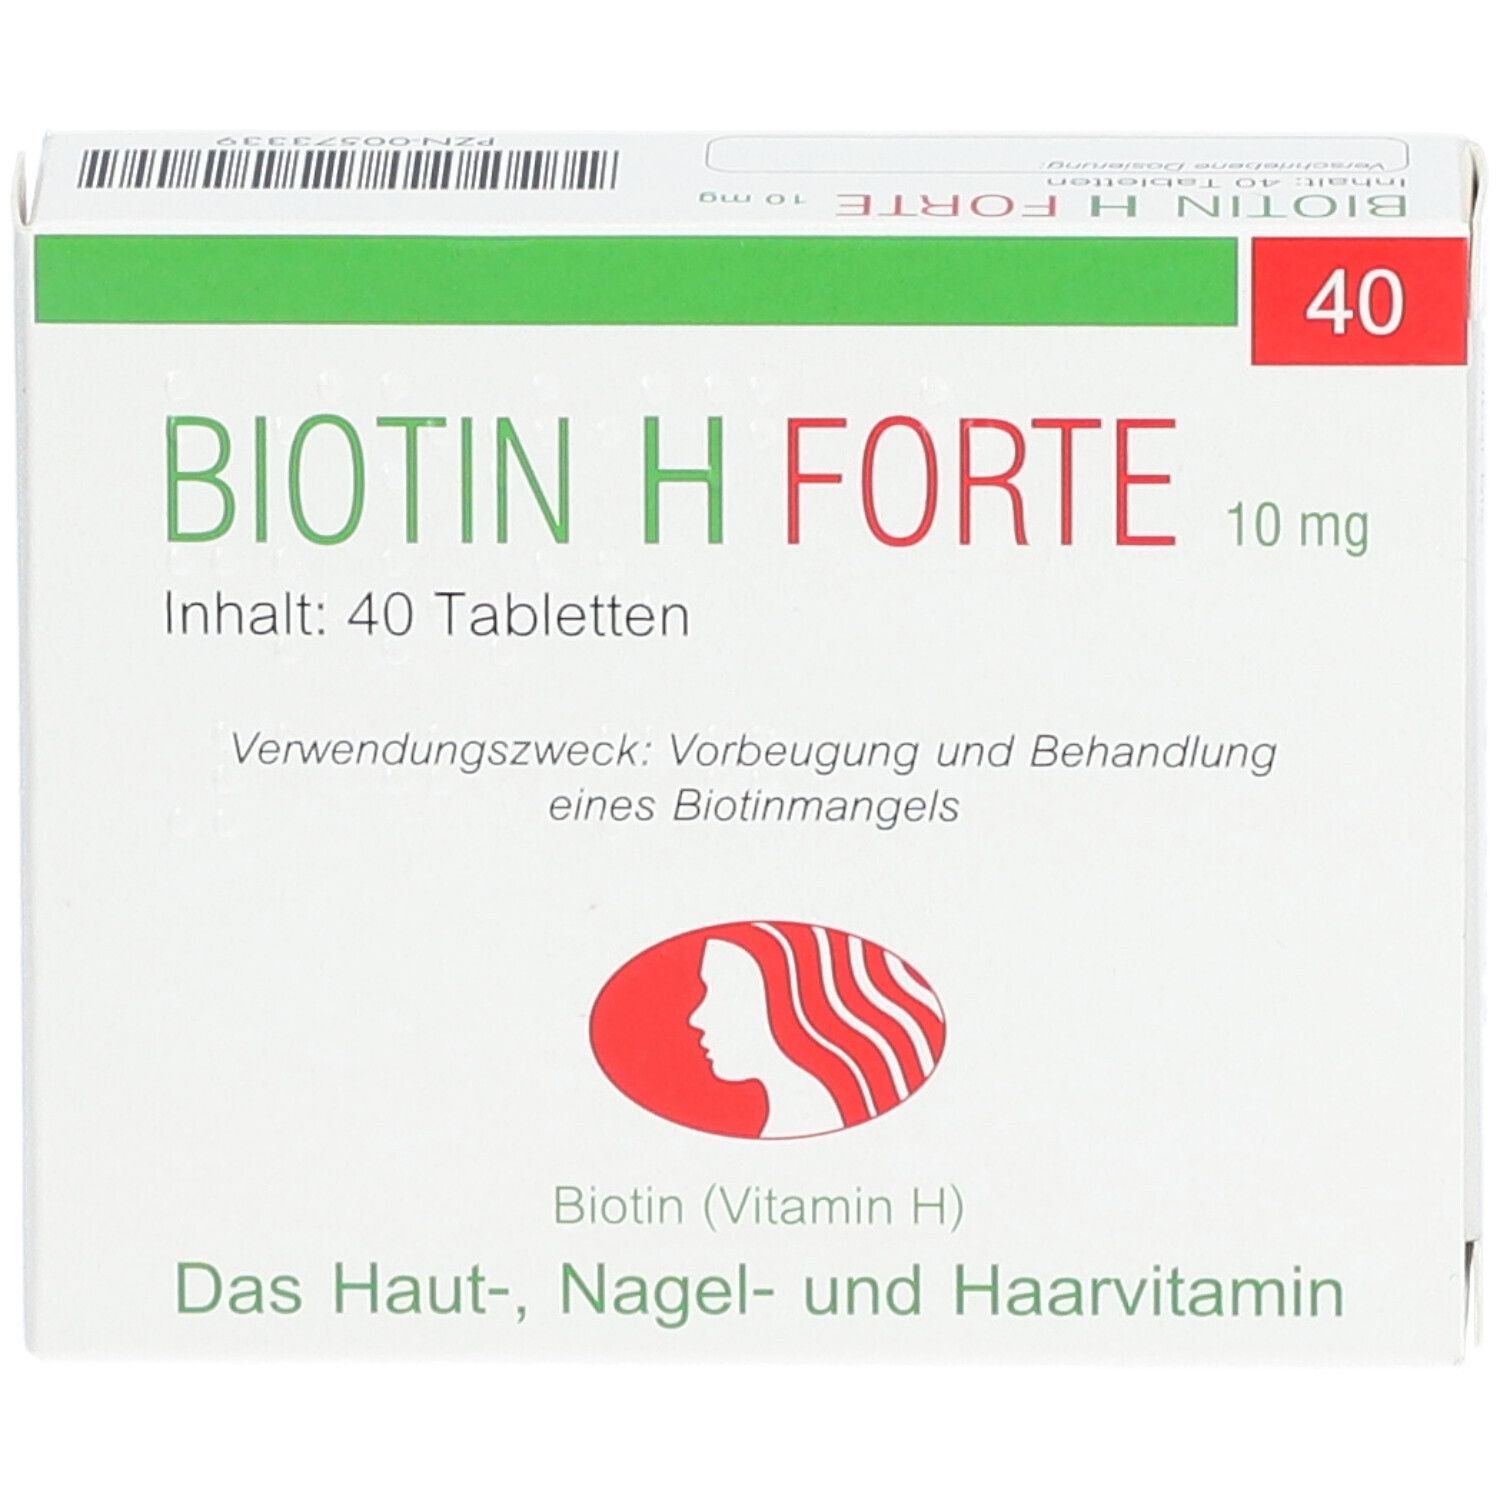 BIOTIN H forte 10mg Tabletten